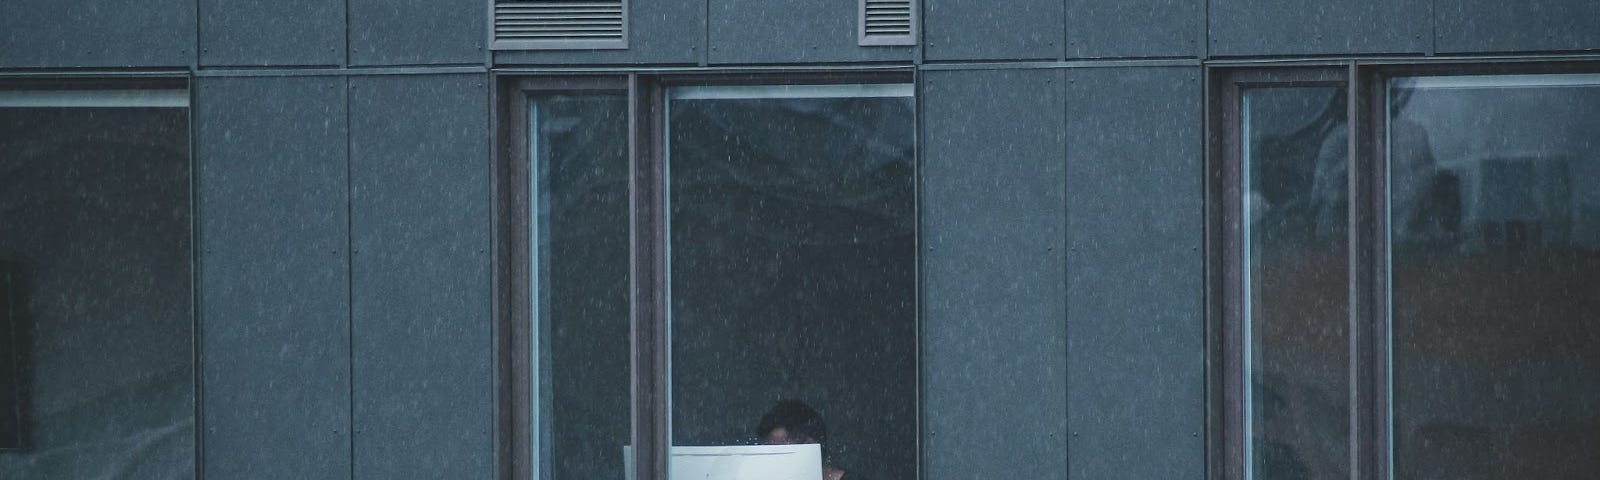 vista de fora de um homem trabalhando no computador em frente à janela. O prédio é cinza e o monitor se destaca por ser branco. | portainer ubuntu contêineres docker